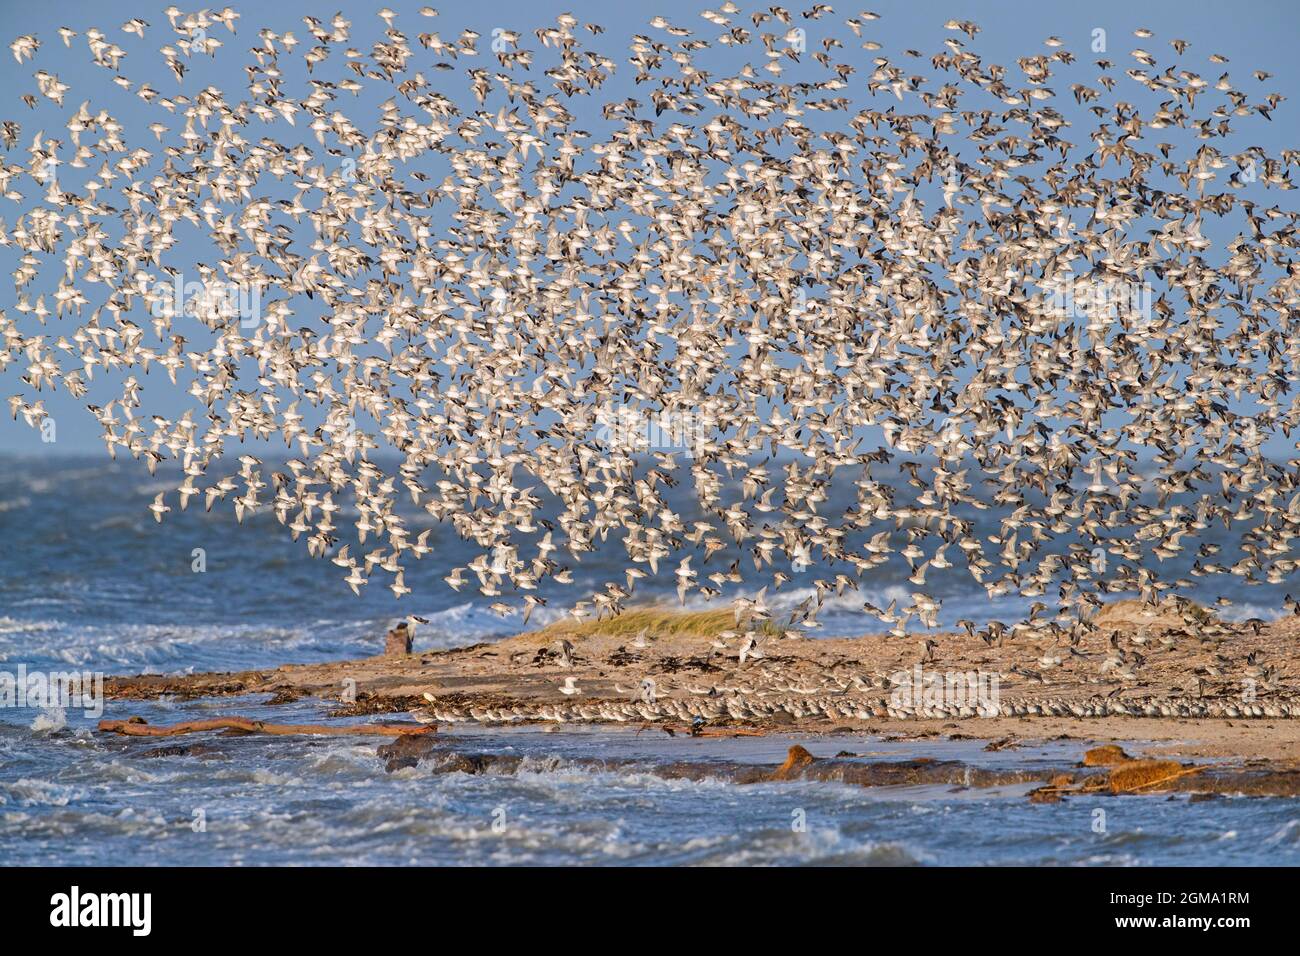 Nœud rouge (Calidris canutus) troupeau de nœuds dans le plumage non-reproducteur volant au-dessus de la plage le long du Parc national de la mer des Wadden du Schleswig-Holstein, Allemagne Banque D'Images